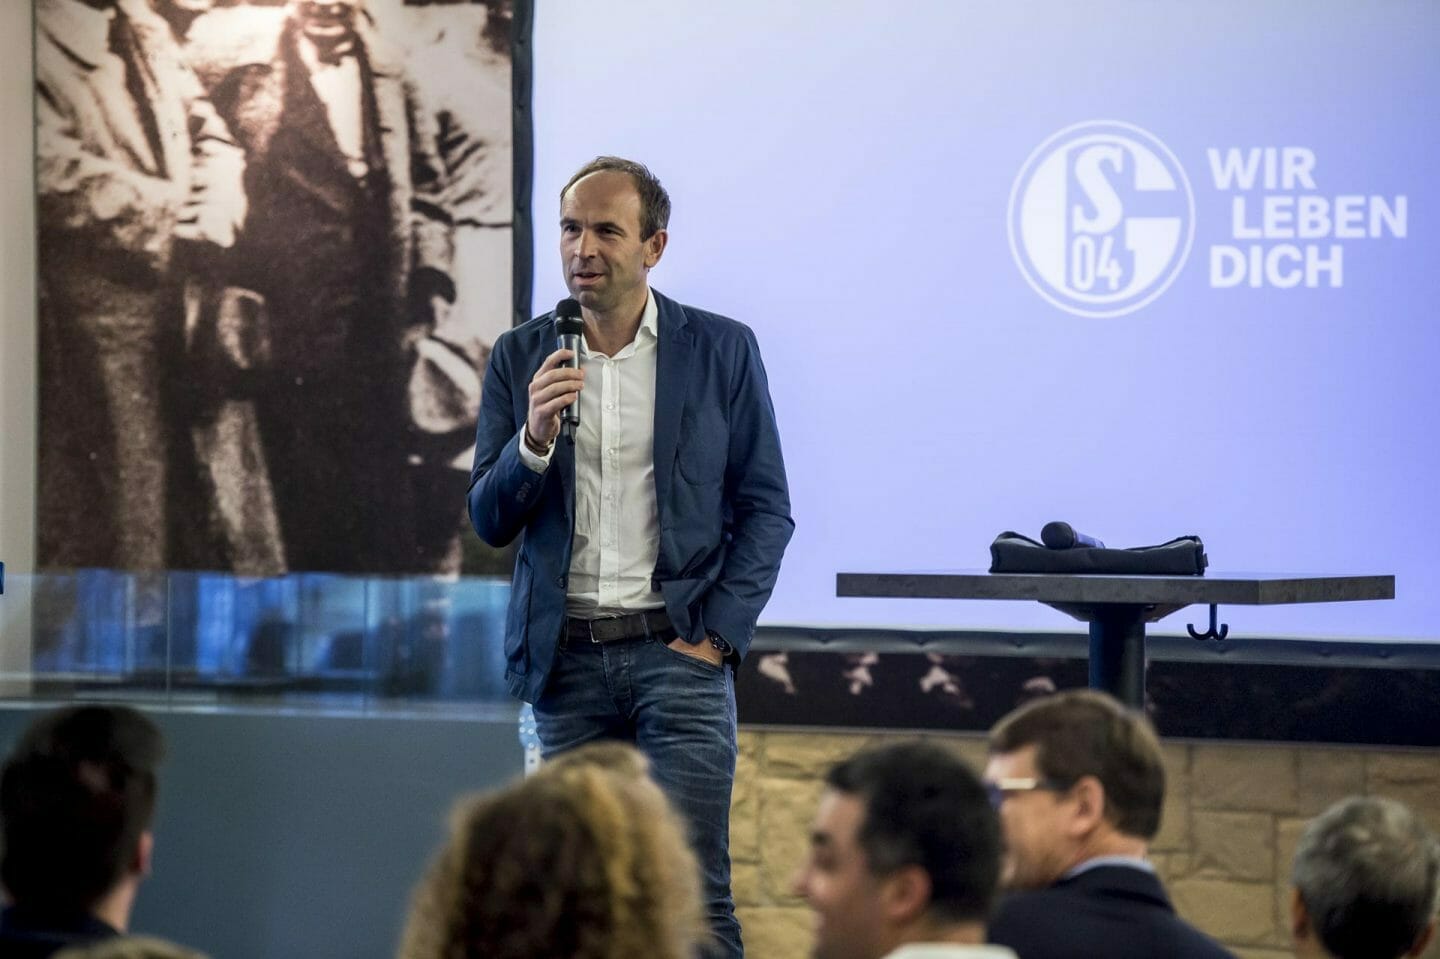 „Visionär“: Schalker Esport-Engagement beeindruckt Wirtschaftsjunioren